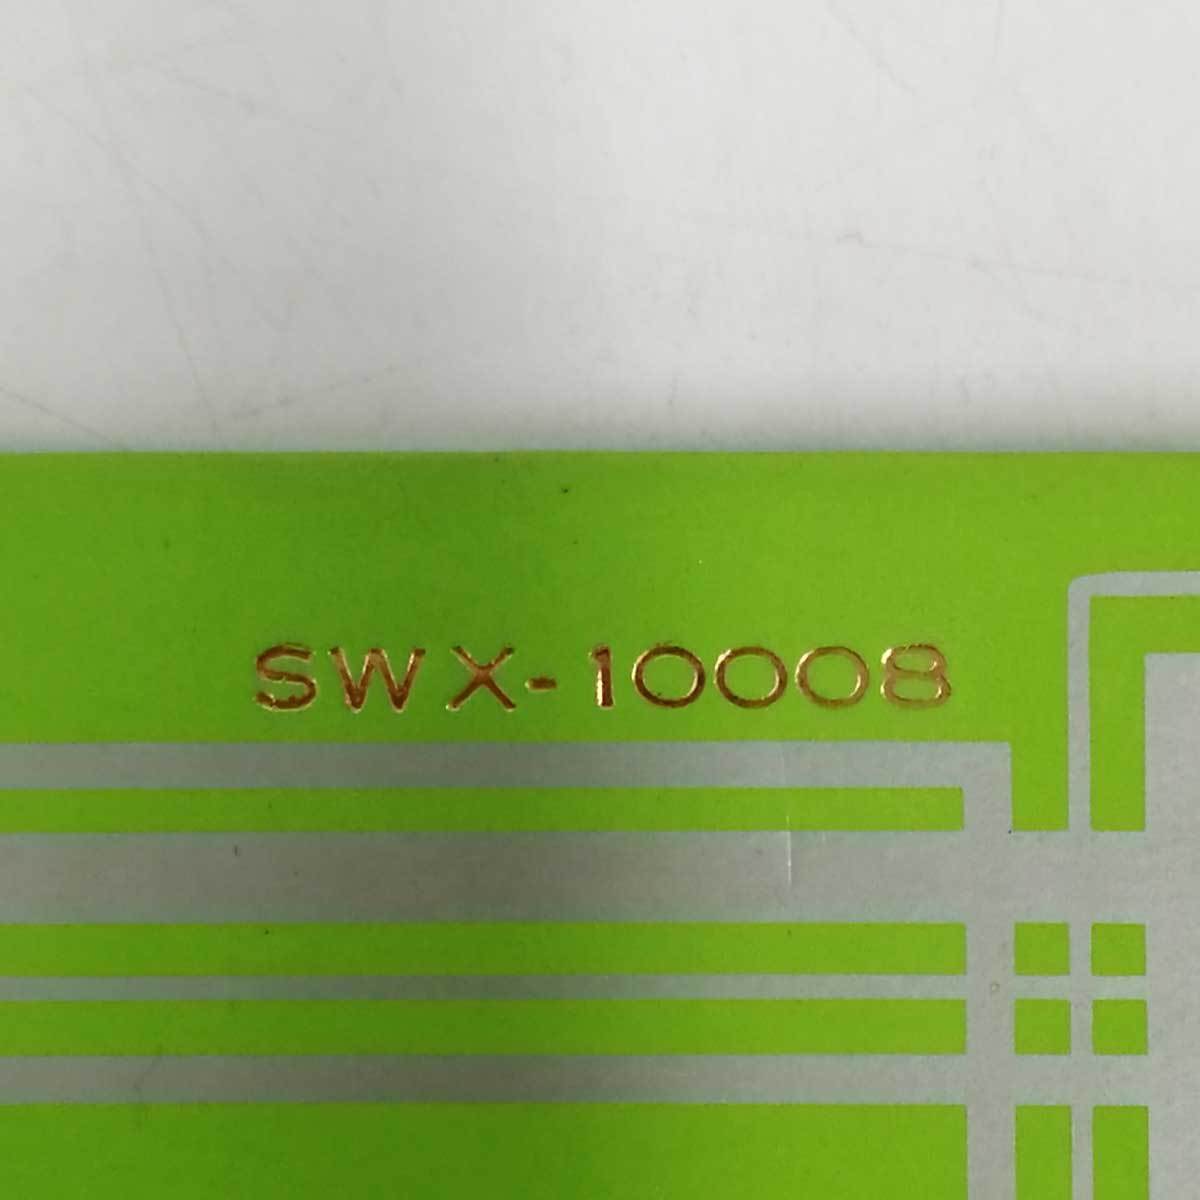 【中古】LP ニニ・ロッソ スーパー・デラックス SWX-10008 レコード_画像3